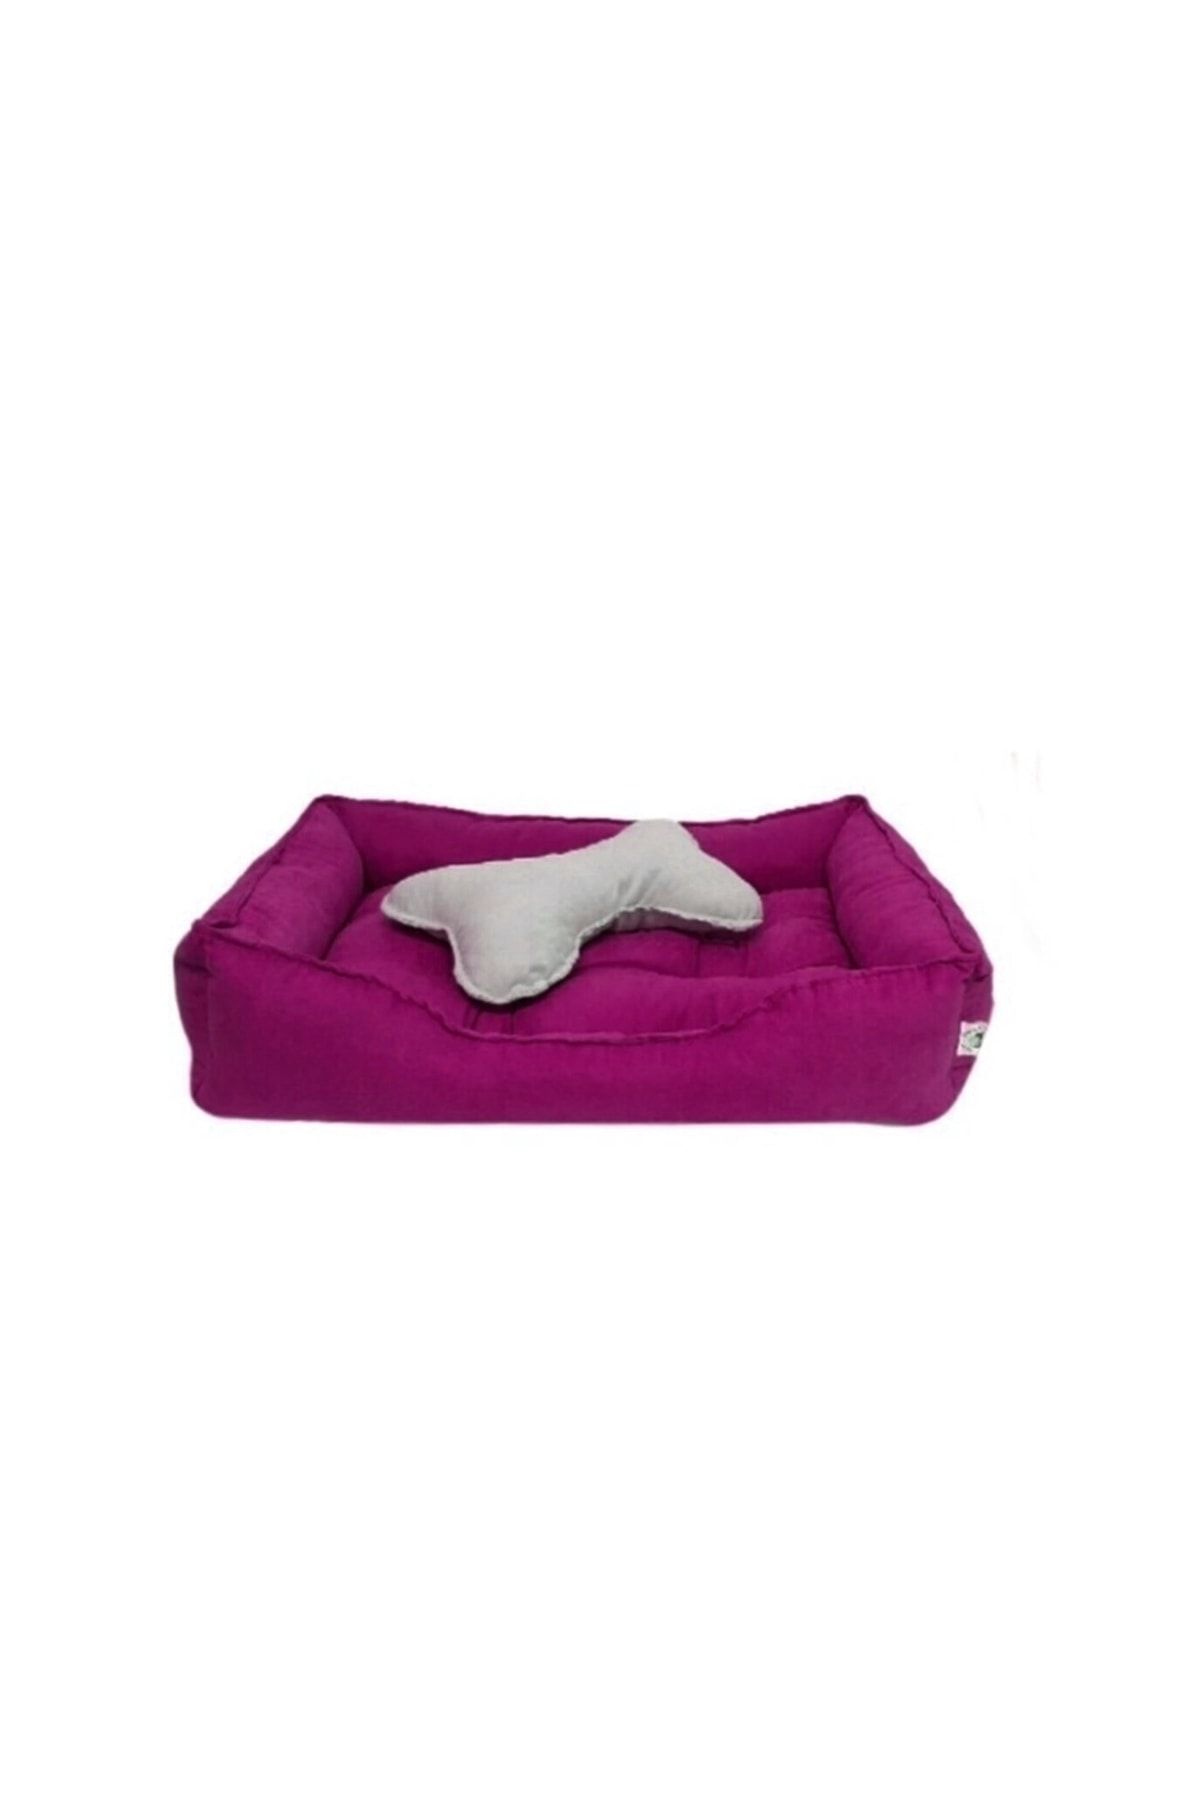 Patili Evler Kedi Köpek Yatağı 55x70 Cm Yumuşak Form Küçük Ve Orta Irklar Için Pembe Renk